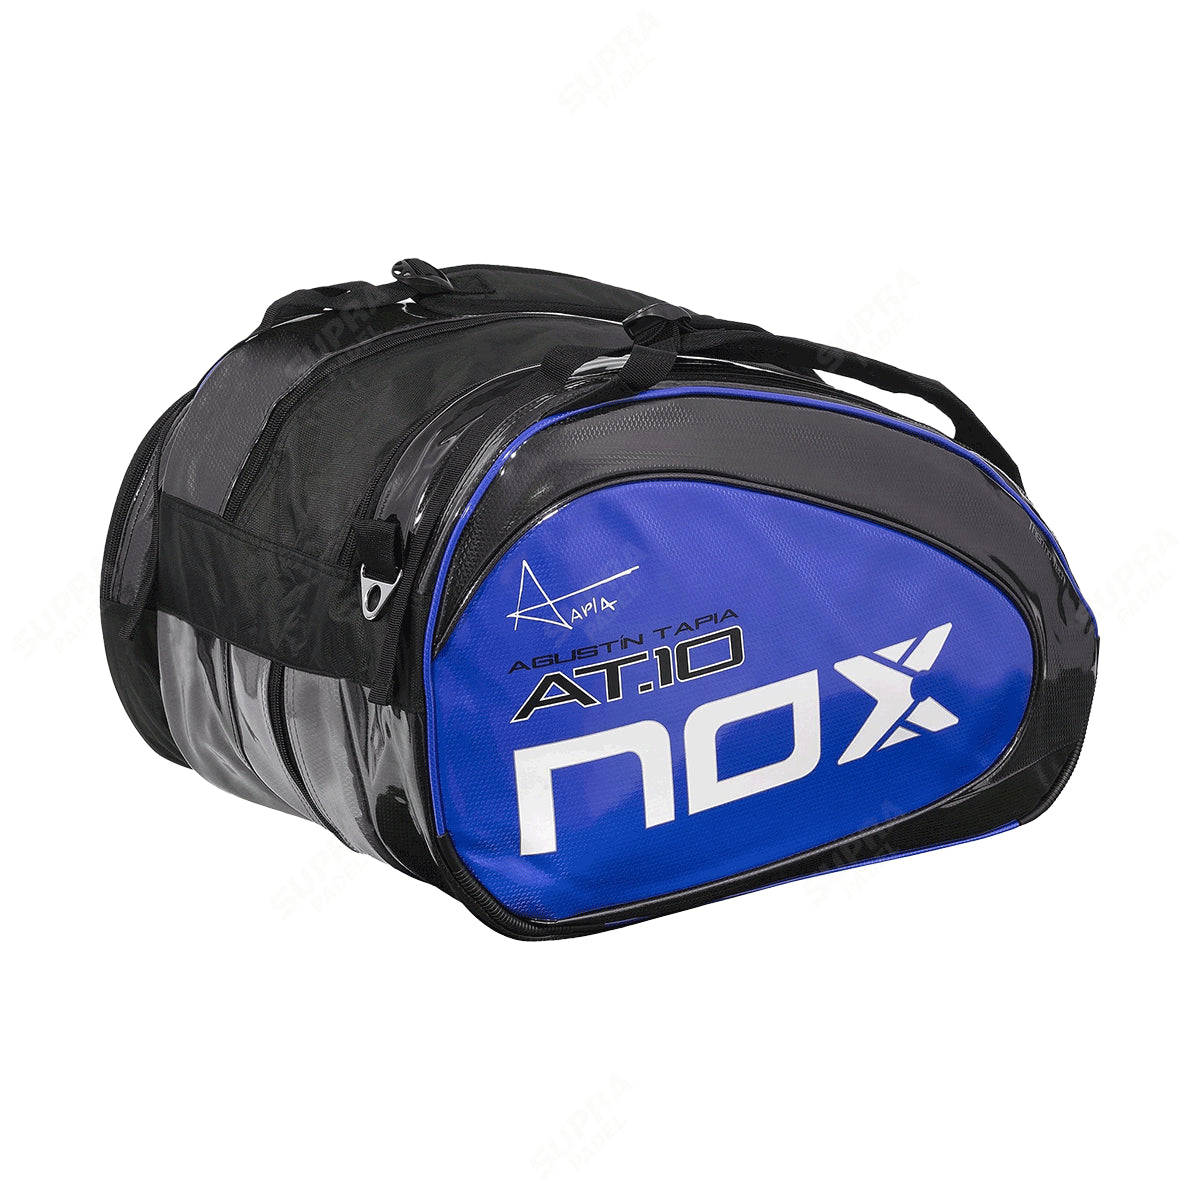 Paletero NOX Padel AT10 Team Azul